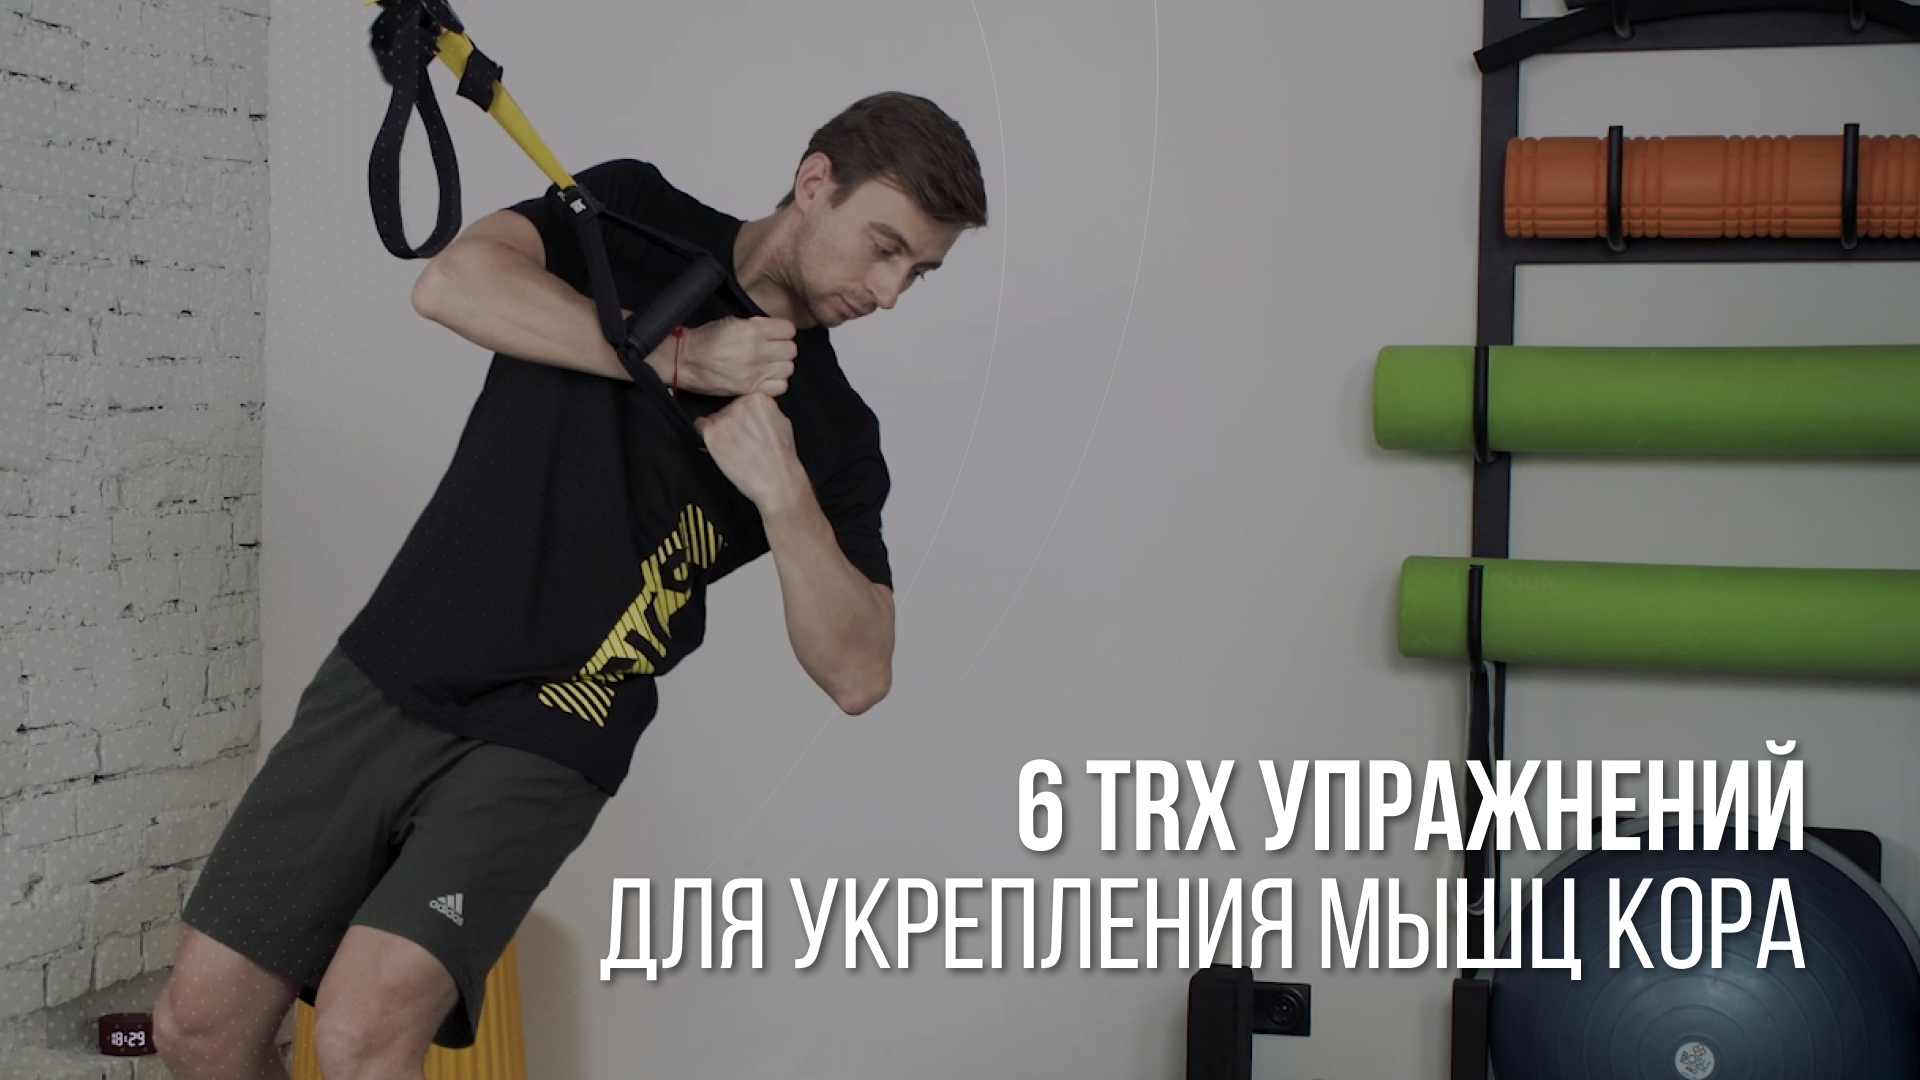 Укрепление мышц кора — 6 TRX упражнений для любого уровня подготовки